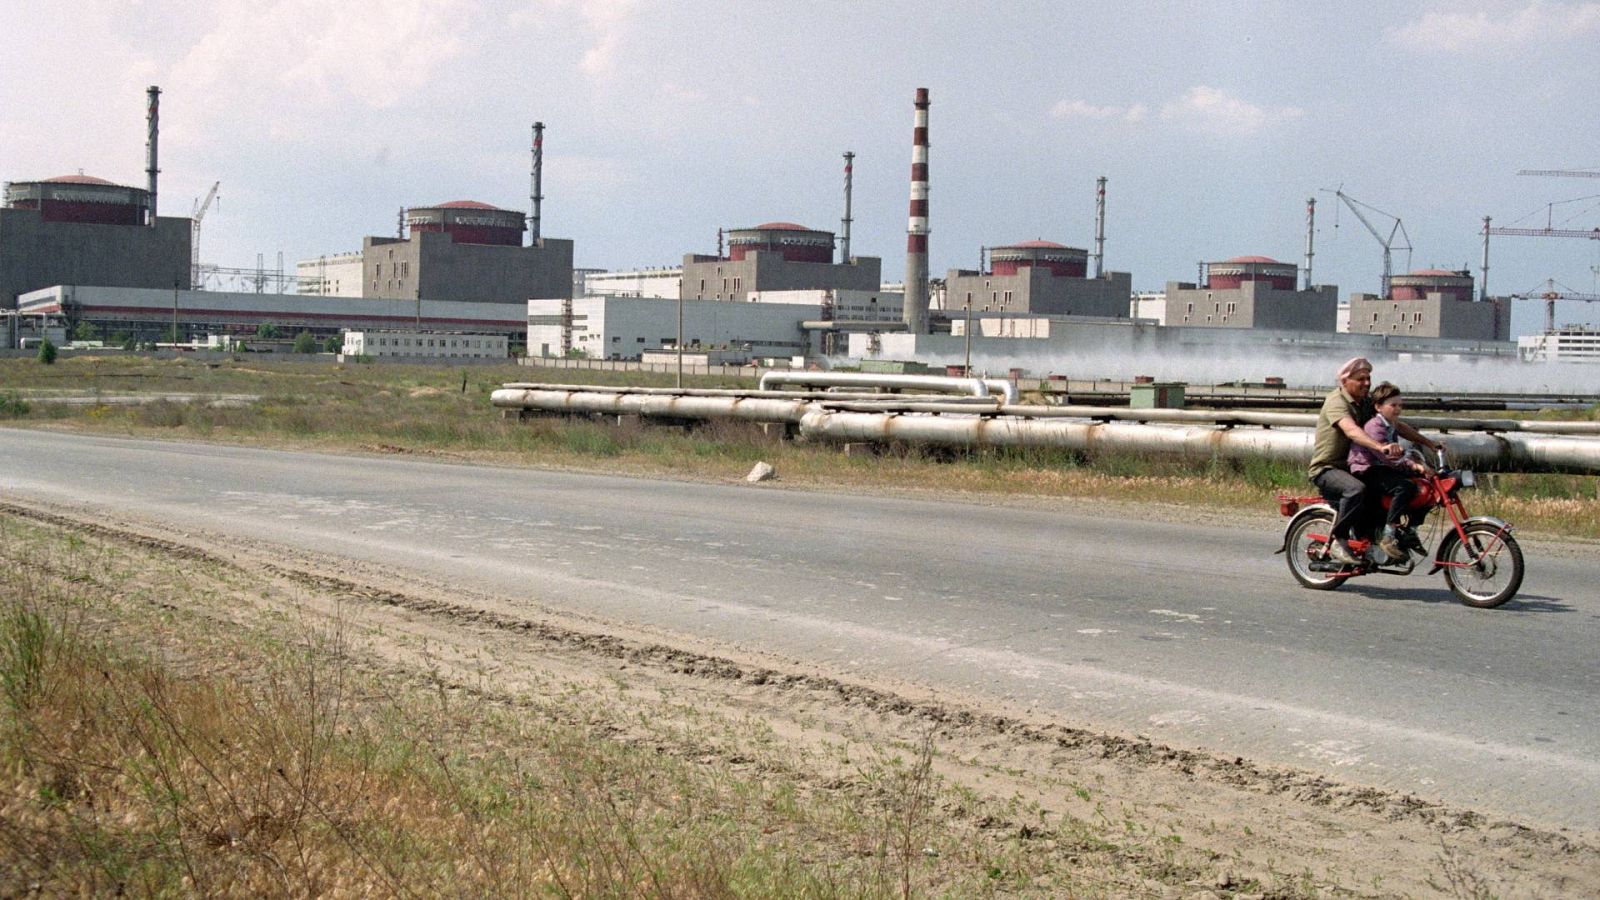 14 horas - La OIEA confirma que no hay escape radioactivo en Zaporiyia - Escuchar ahora